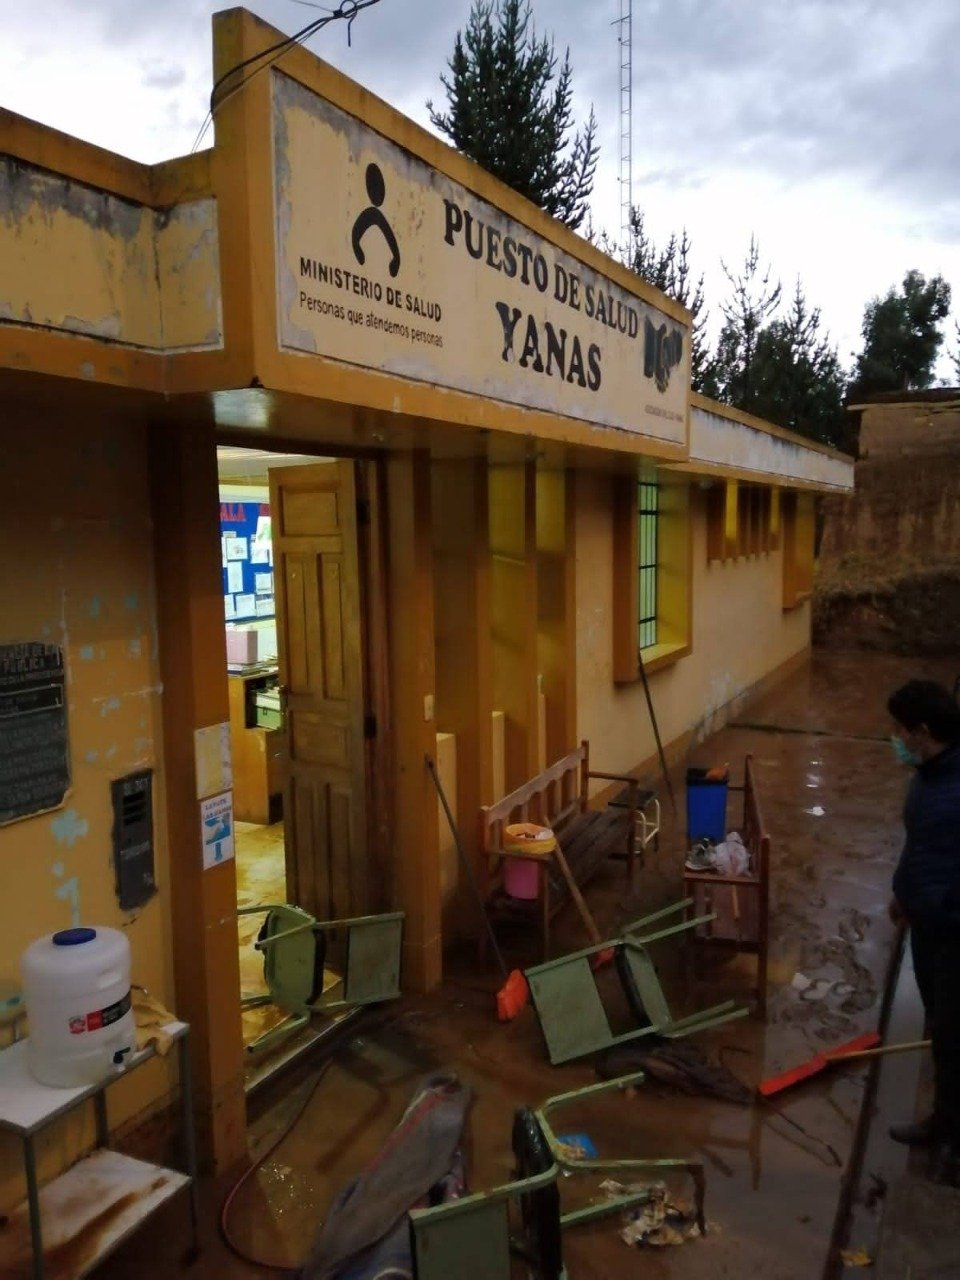 Torrencial lluvia en el distrito de Yanas causó inundación y daño viviendas y posta médica